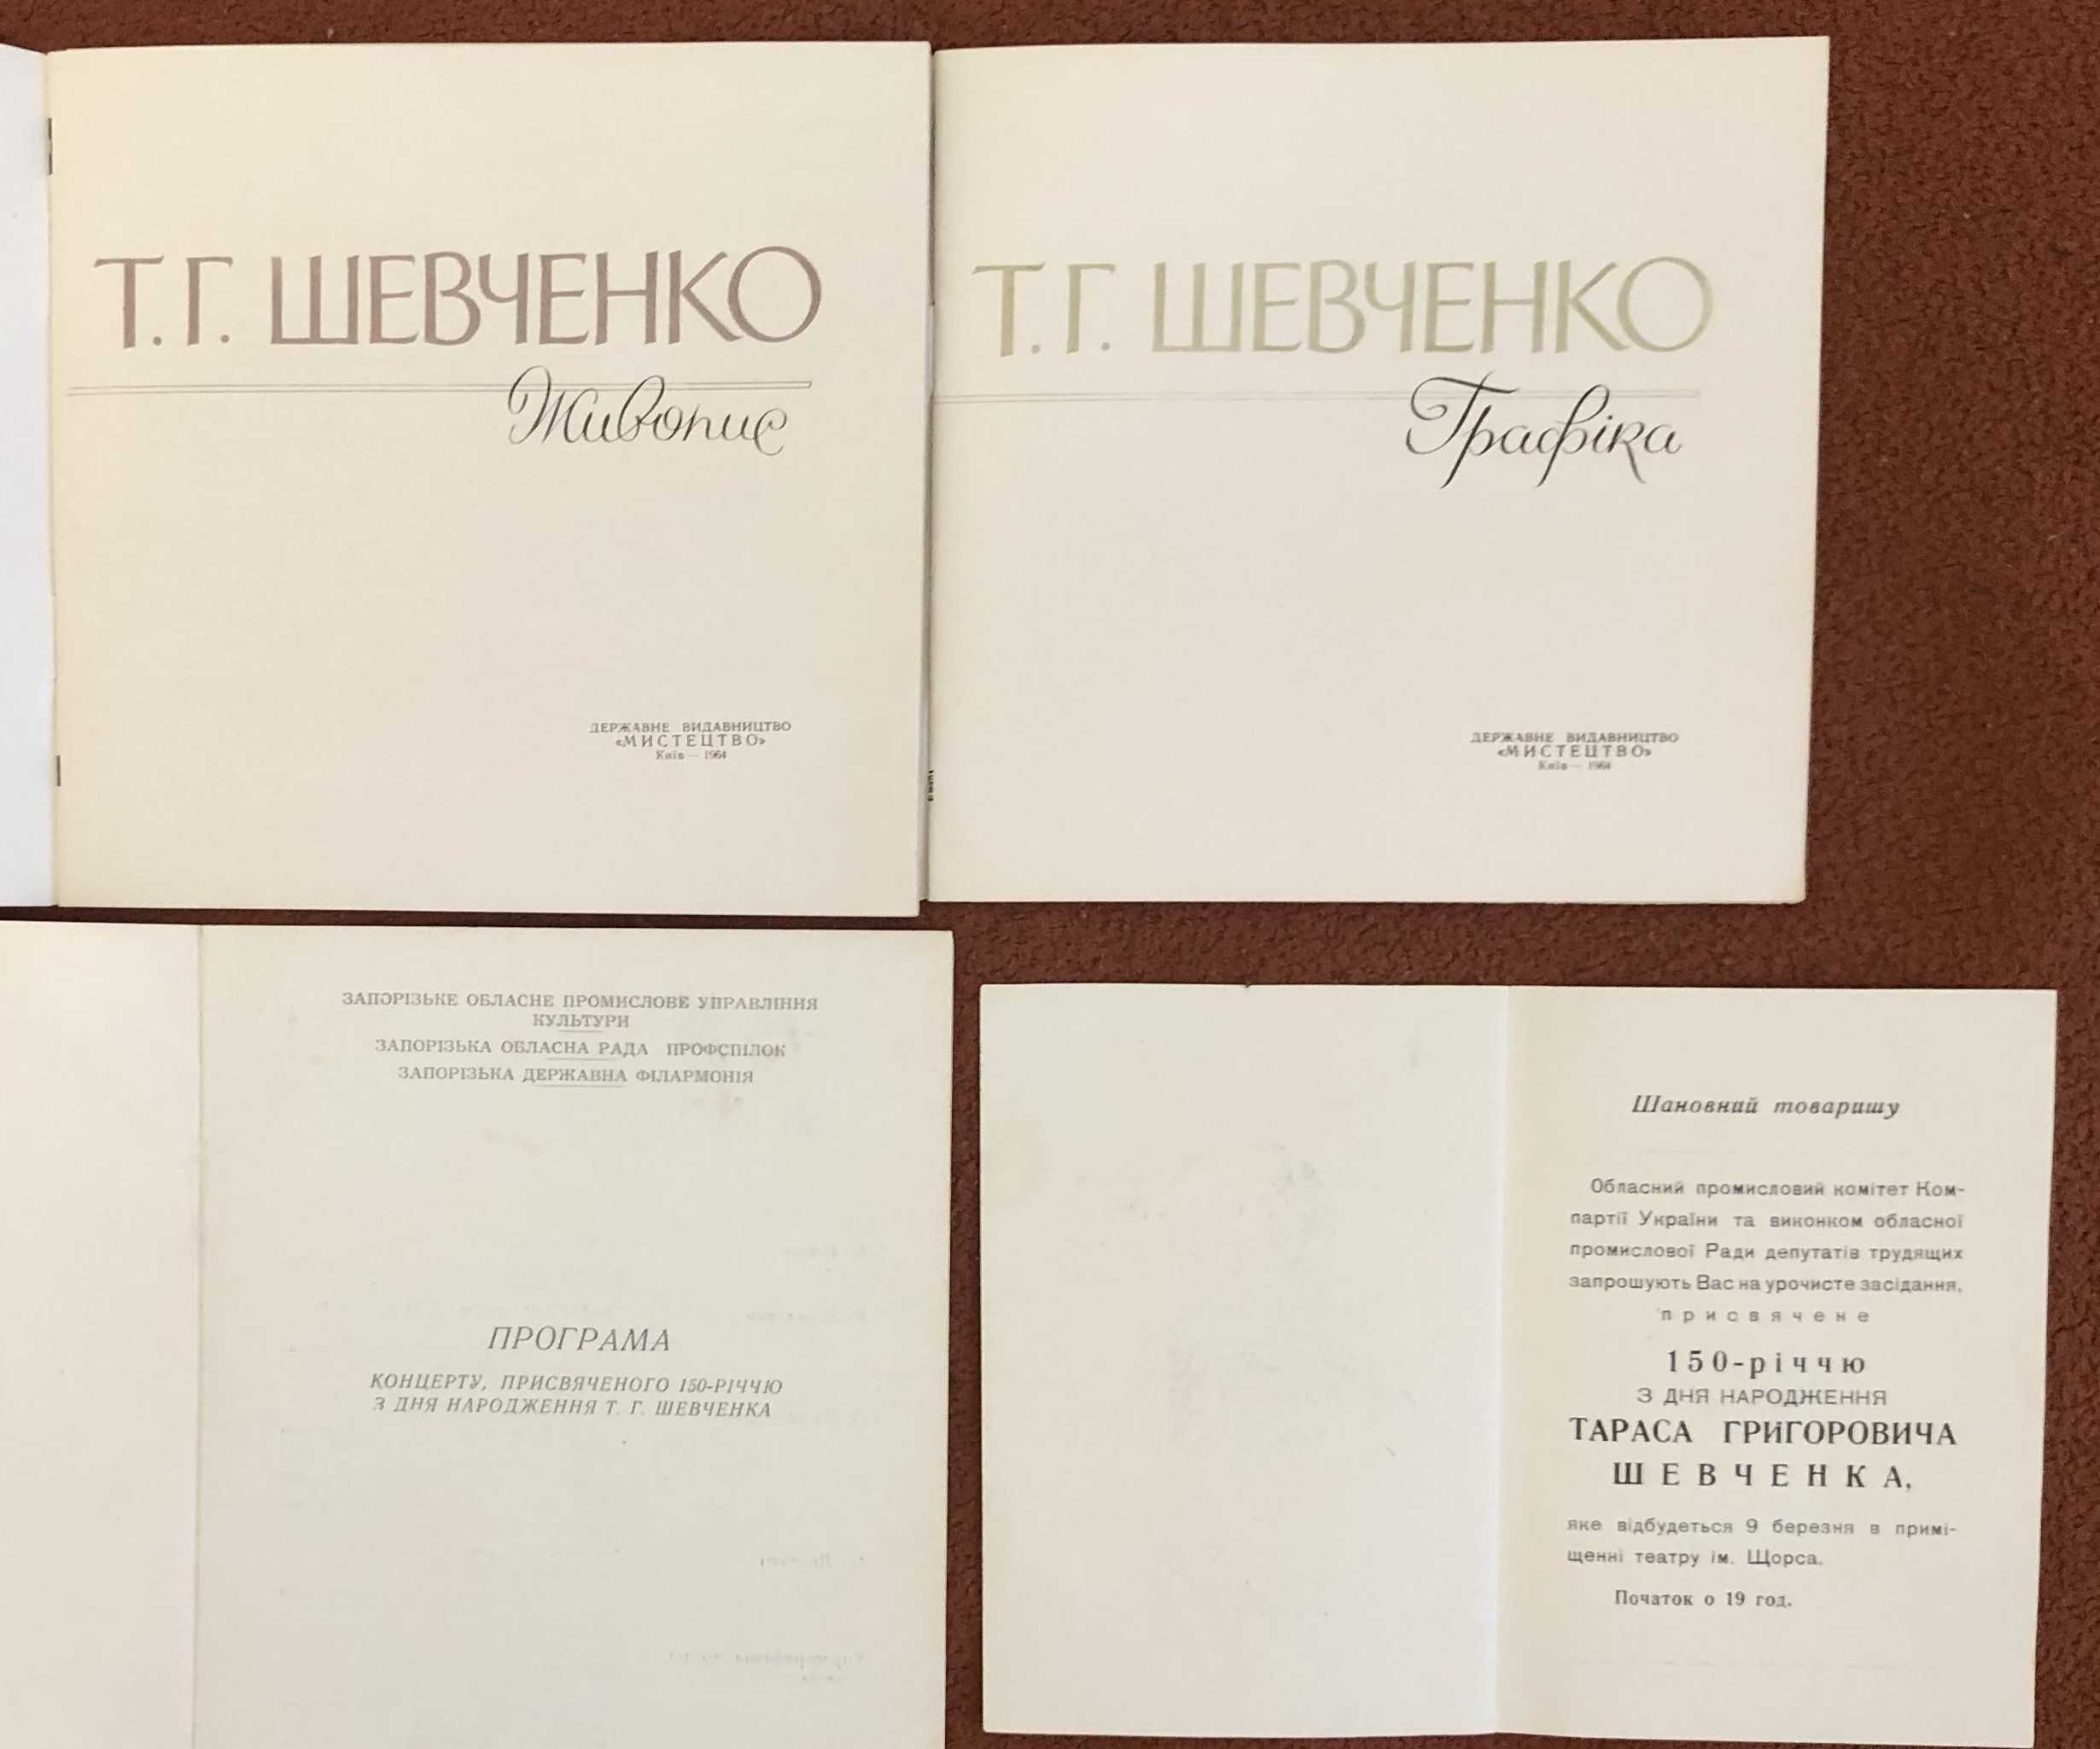 Две брошюры Т.Г. Шевченко "Живопись" и "Графика" (изд. Киев, 1964 г).